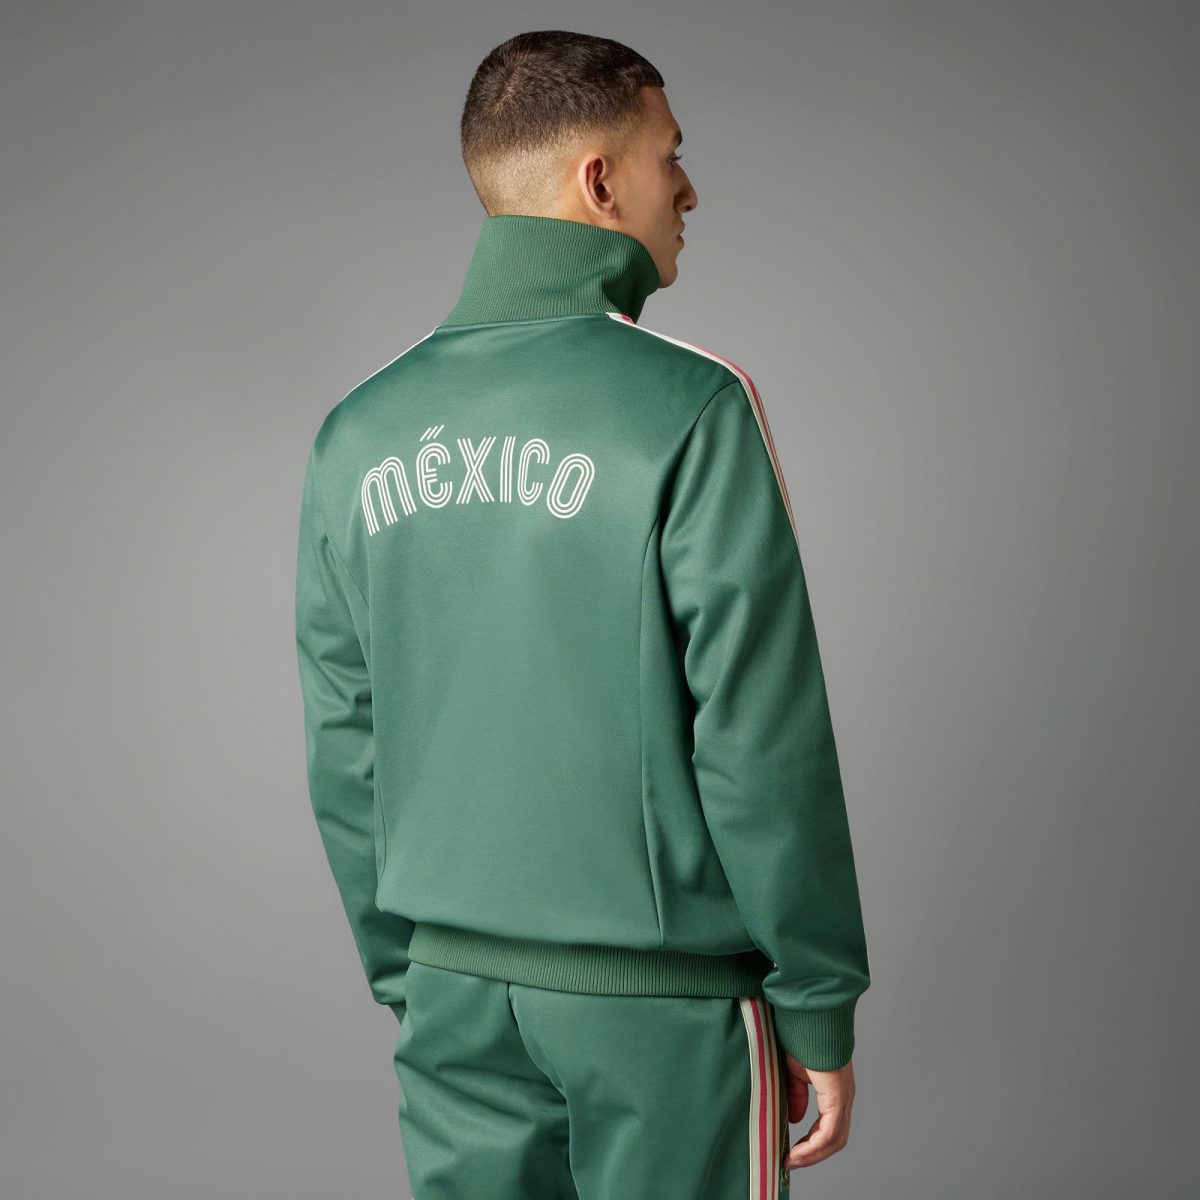 Мужская куртка adidas MEXICO BECKENBAUER TRACK TOP фотография